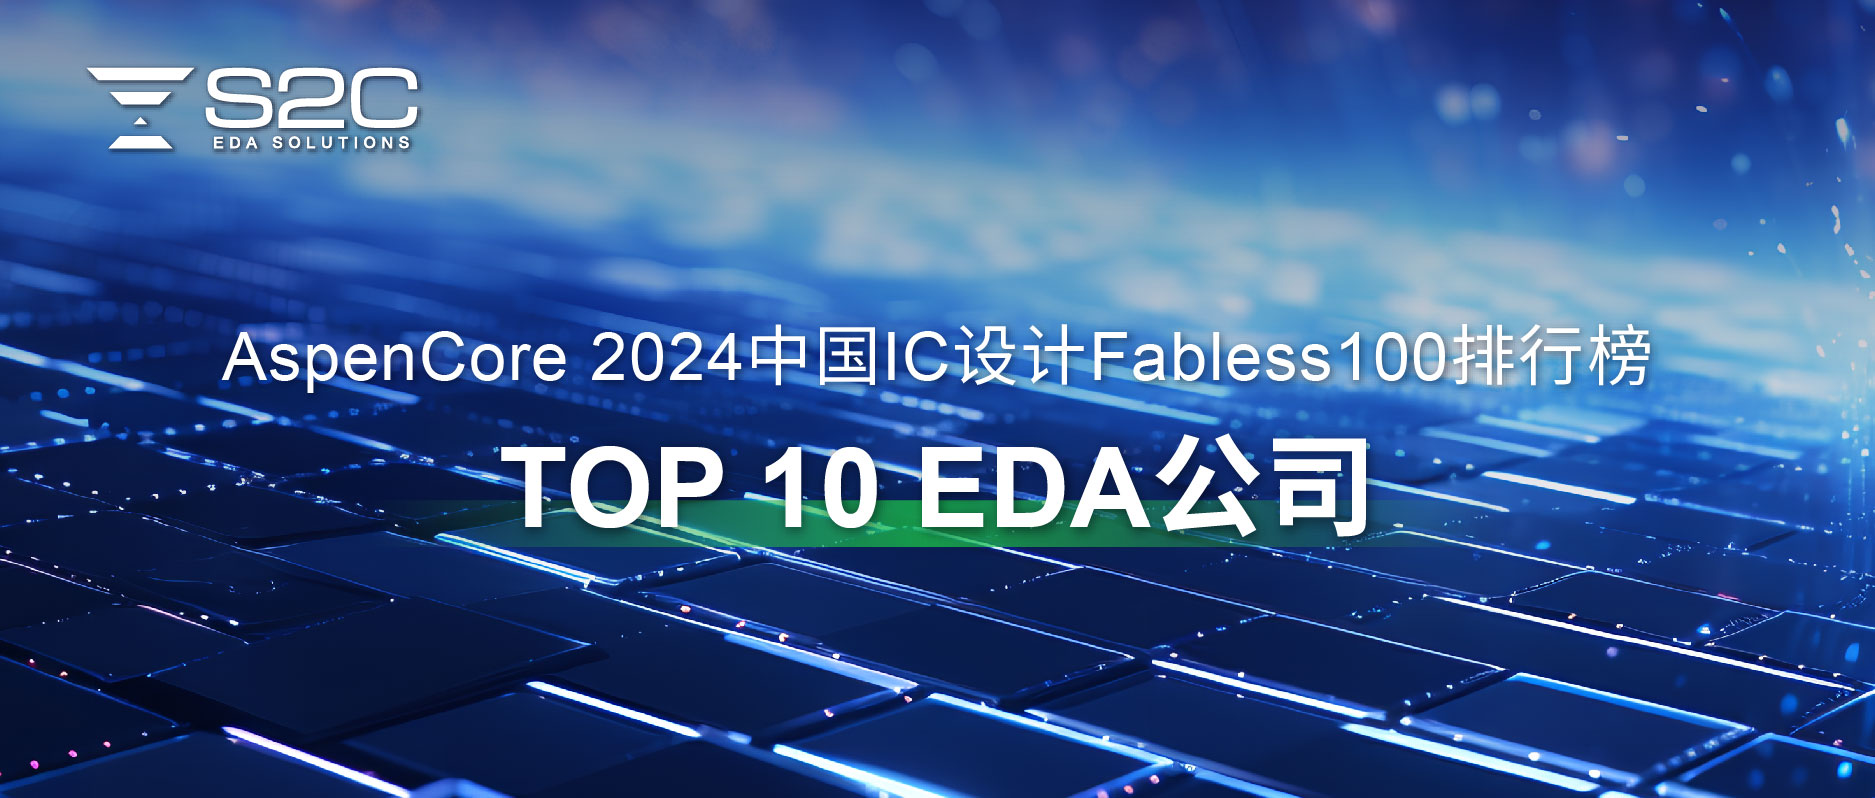 2024中国IC设计行业TOP 10 EDA公司.jpg